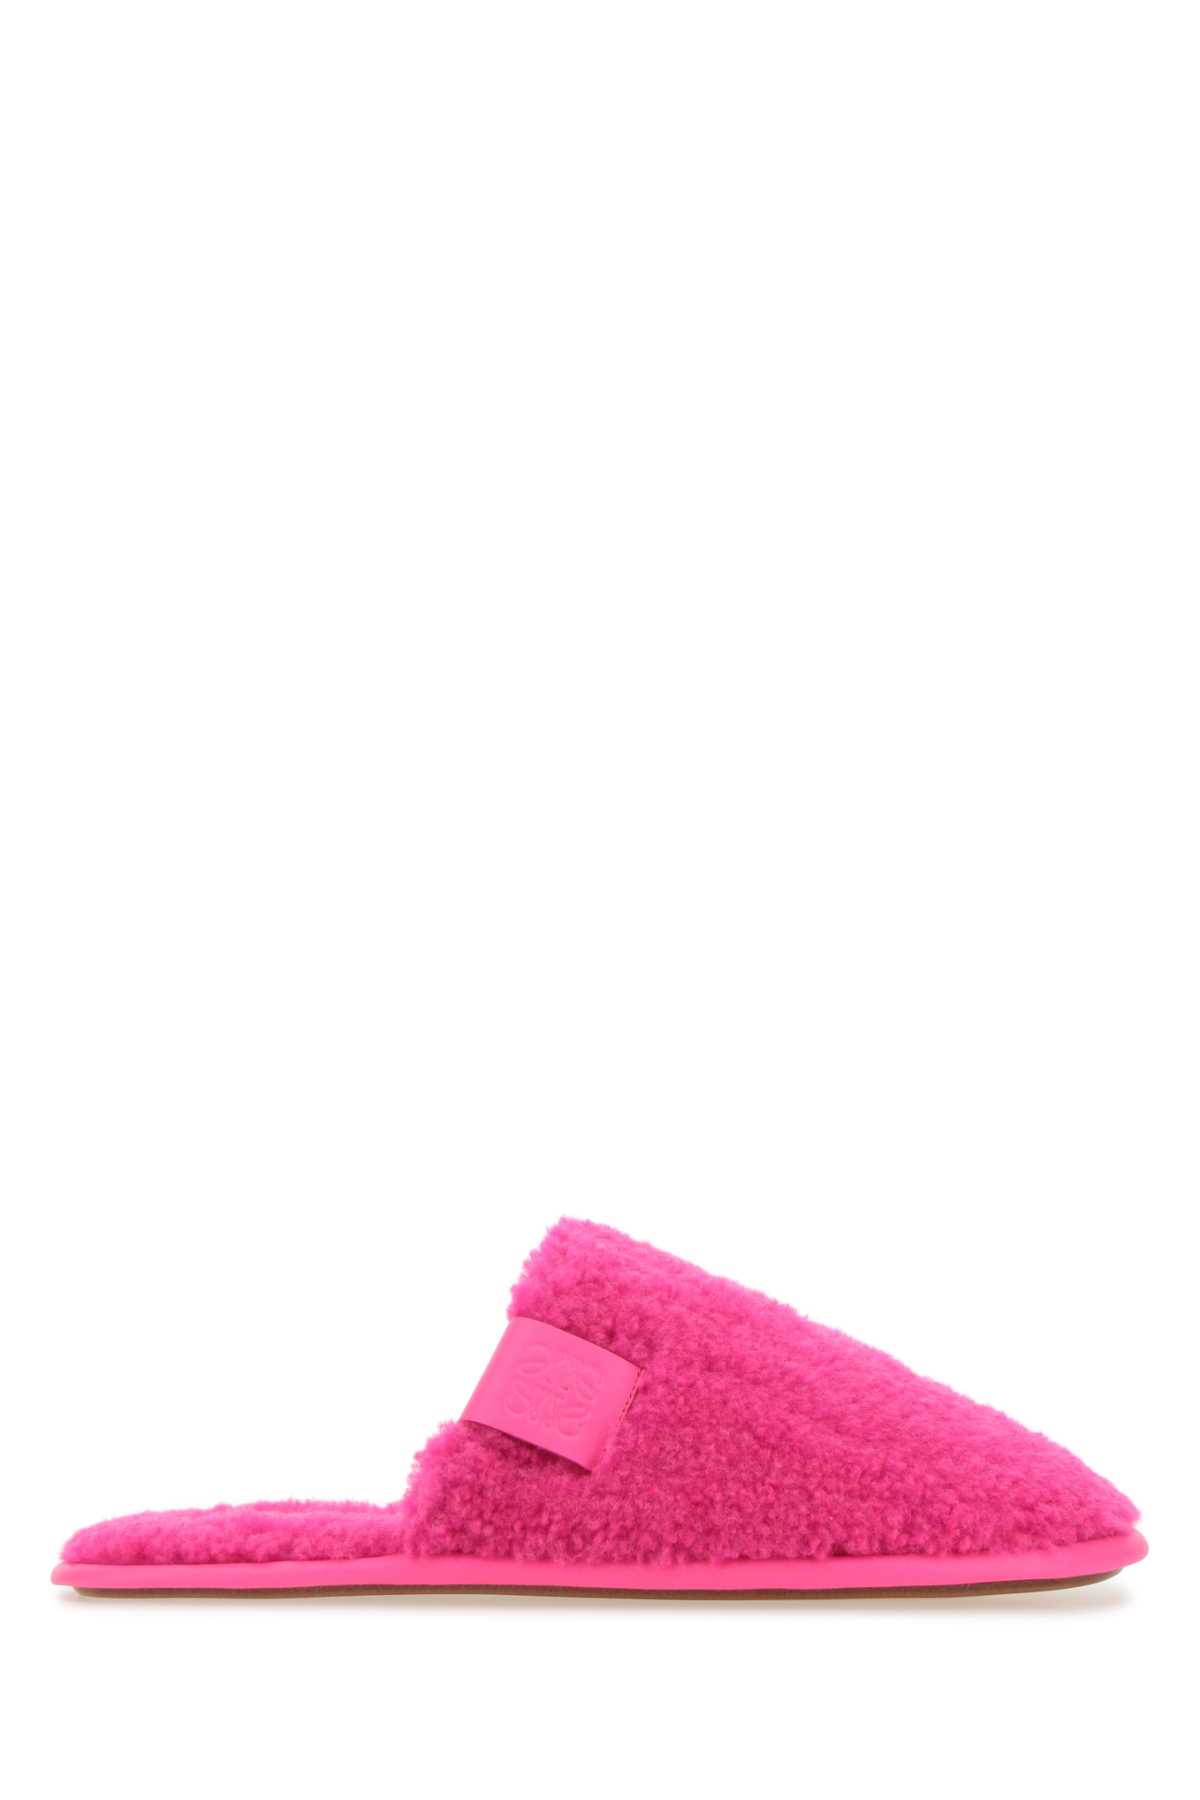 Loewe Fluo Pink Pile Slippers